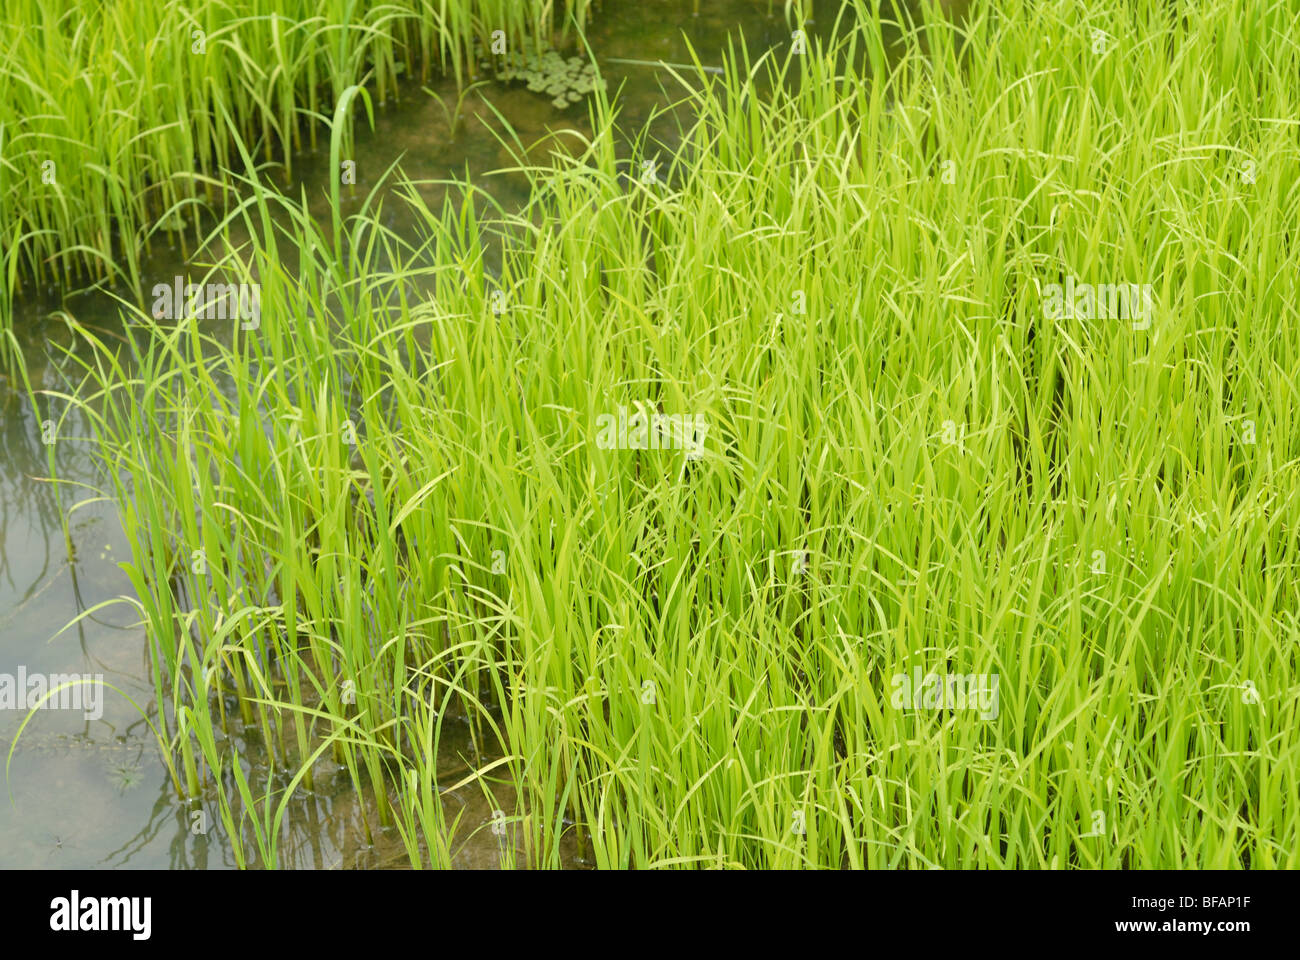 Einem Feld Paddy Reis überfluteten Ackerland für den Anbau von Reis. Grün wächst Reis Stockfoto